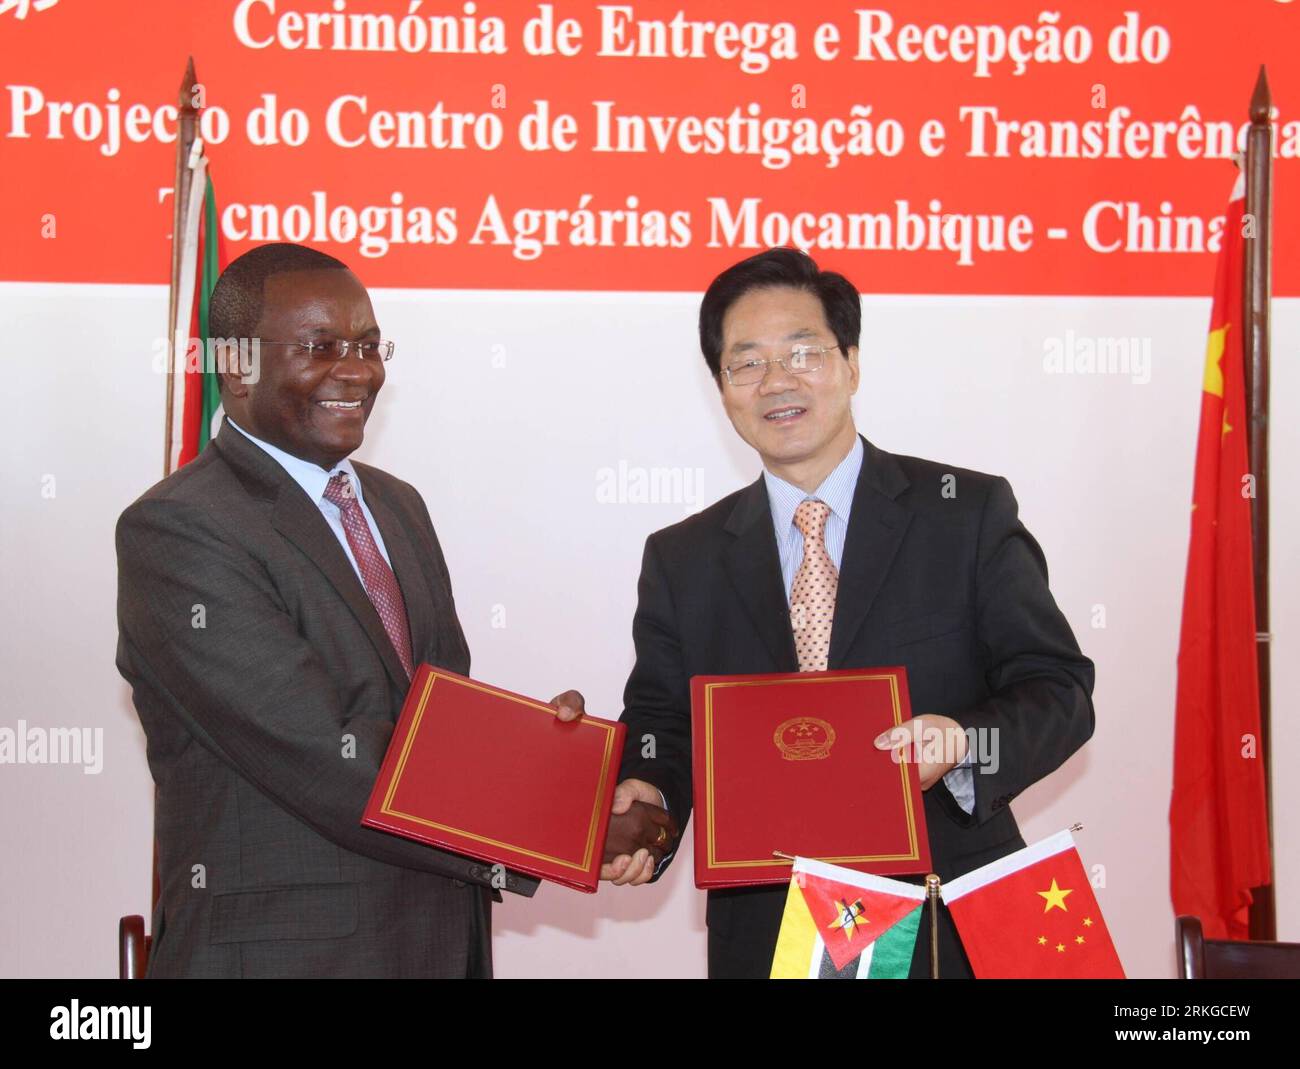 Bildnummer: 55580584 Datum: 07.07.2011 Copyright: imago/Xinhua (110708) -- BOANE, 8 luglio 2011 (Xinhua) -- l'ambasciatore cinese in Mozambico Huang Songfu (R) e il ministro della scienza e della tecnologia Venancio Simao Massingue in Mozambico scambiano i certificati al centro dimostrativo di tecnologia agricola Cina-Mozambico nella contea di Boane nella provincia di Maputo, Mozambico, l'8 luglio 2011. Venerdì la Cina ha consegnato il progetto al Mozambico per contribuire a promuovere lo sviluppo agricolo locale. (Xinhua/Liu lungo) (zw) MOZAMBICO-CINA-AGRICOLTURA-COOPERAZIONE PUBLICATIONxNOTxINxCHN People poli Foto Stock